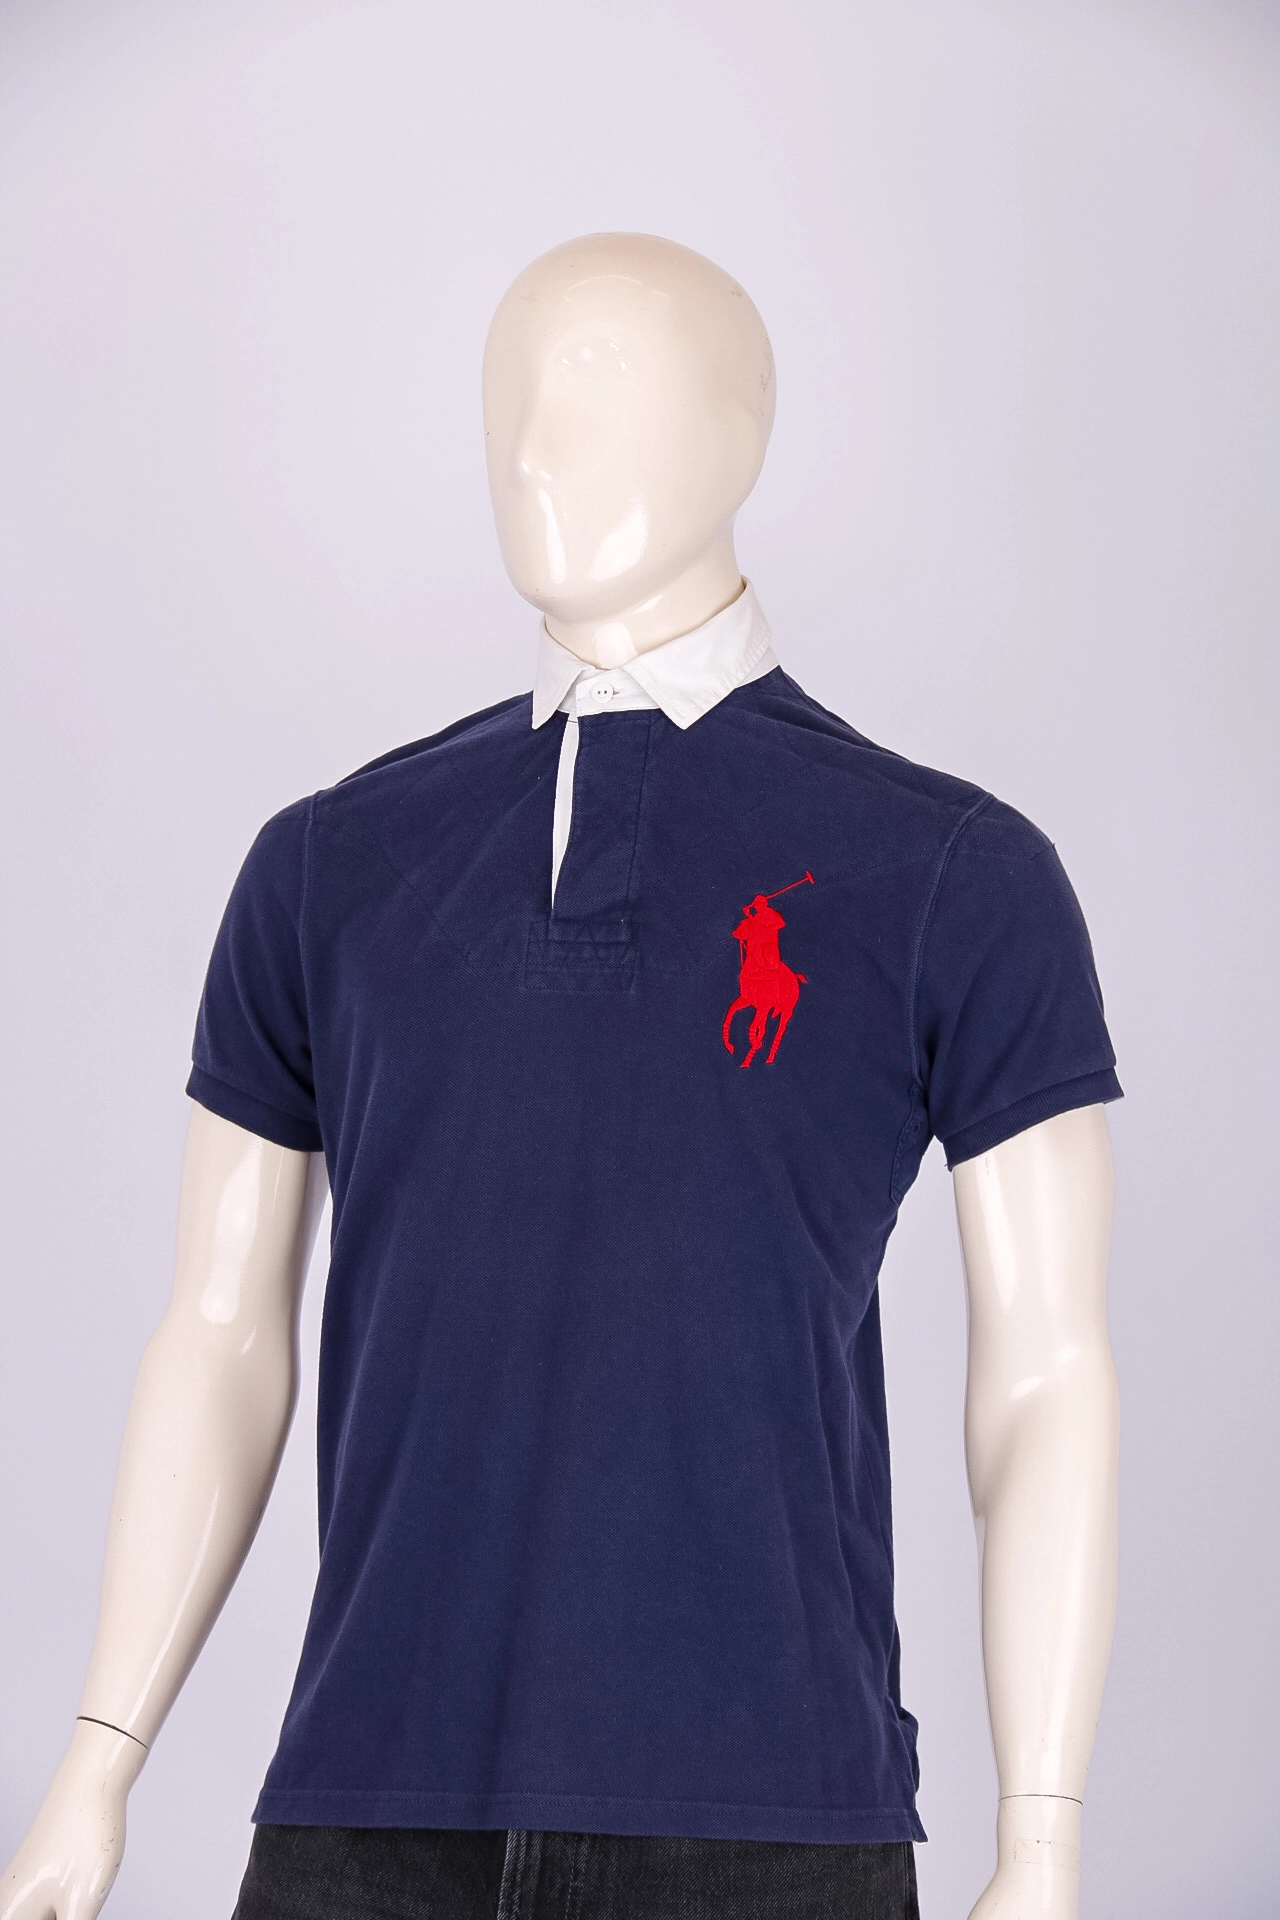 Camiseta Masculina Polo Ralph Lauren Azul Gola Branca M - Rehabita Brechó